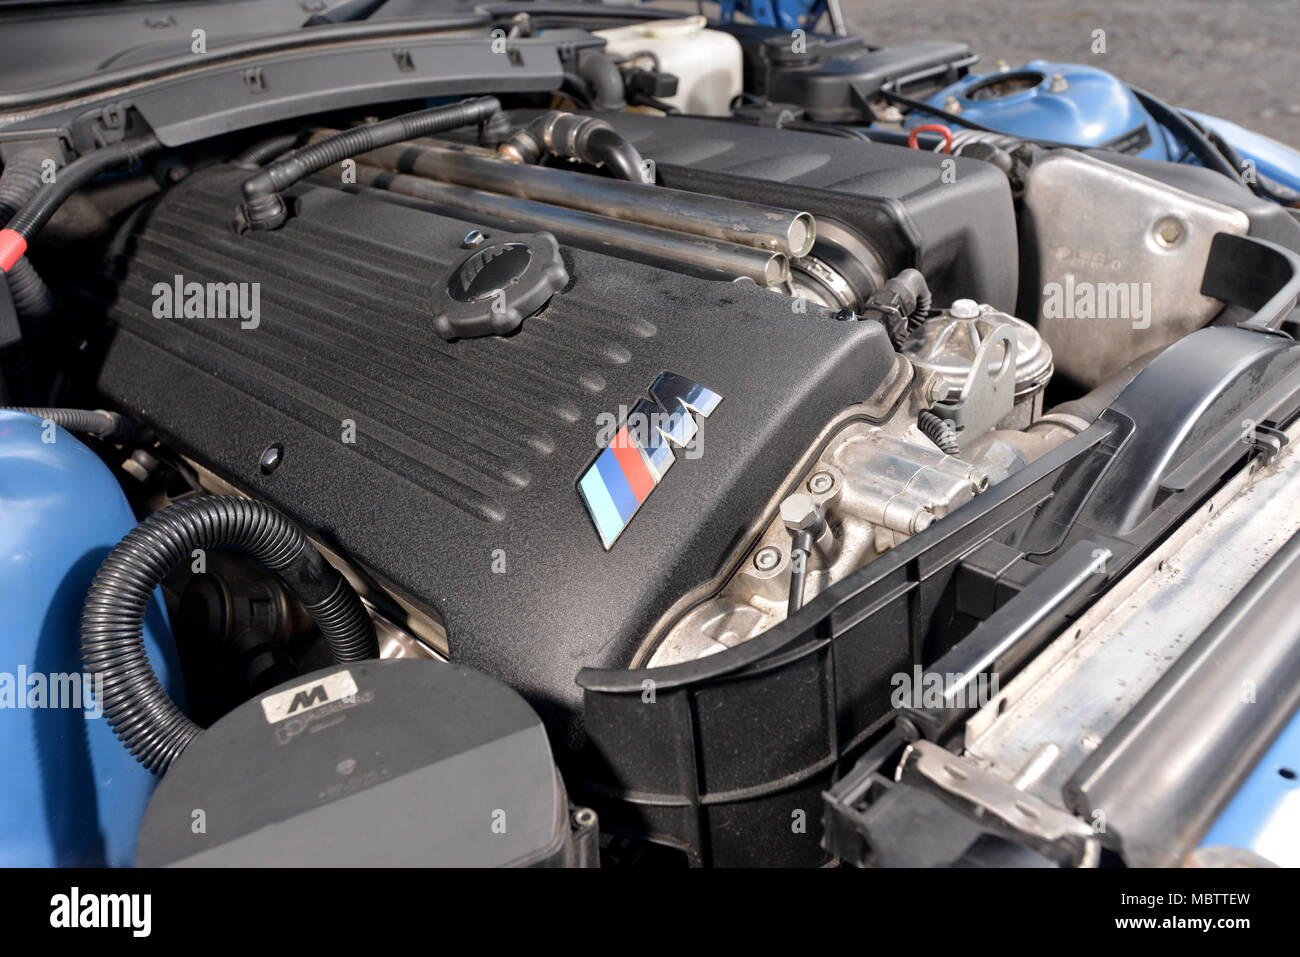 2001 E36/8 BMW Z3M Coupe German sports car Stock Photo